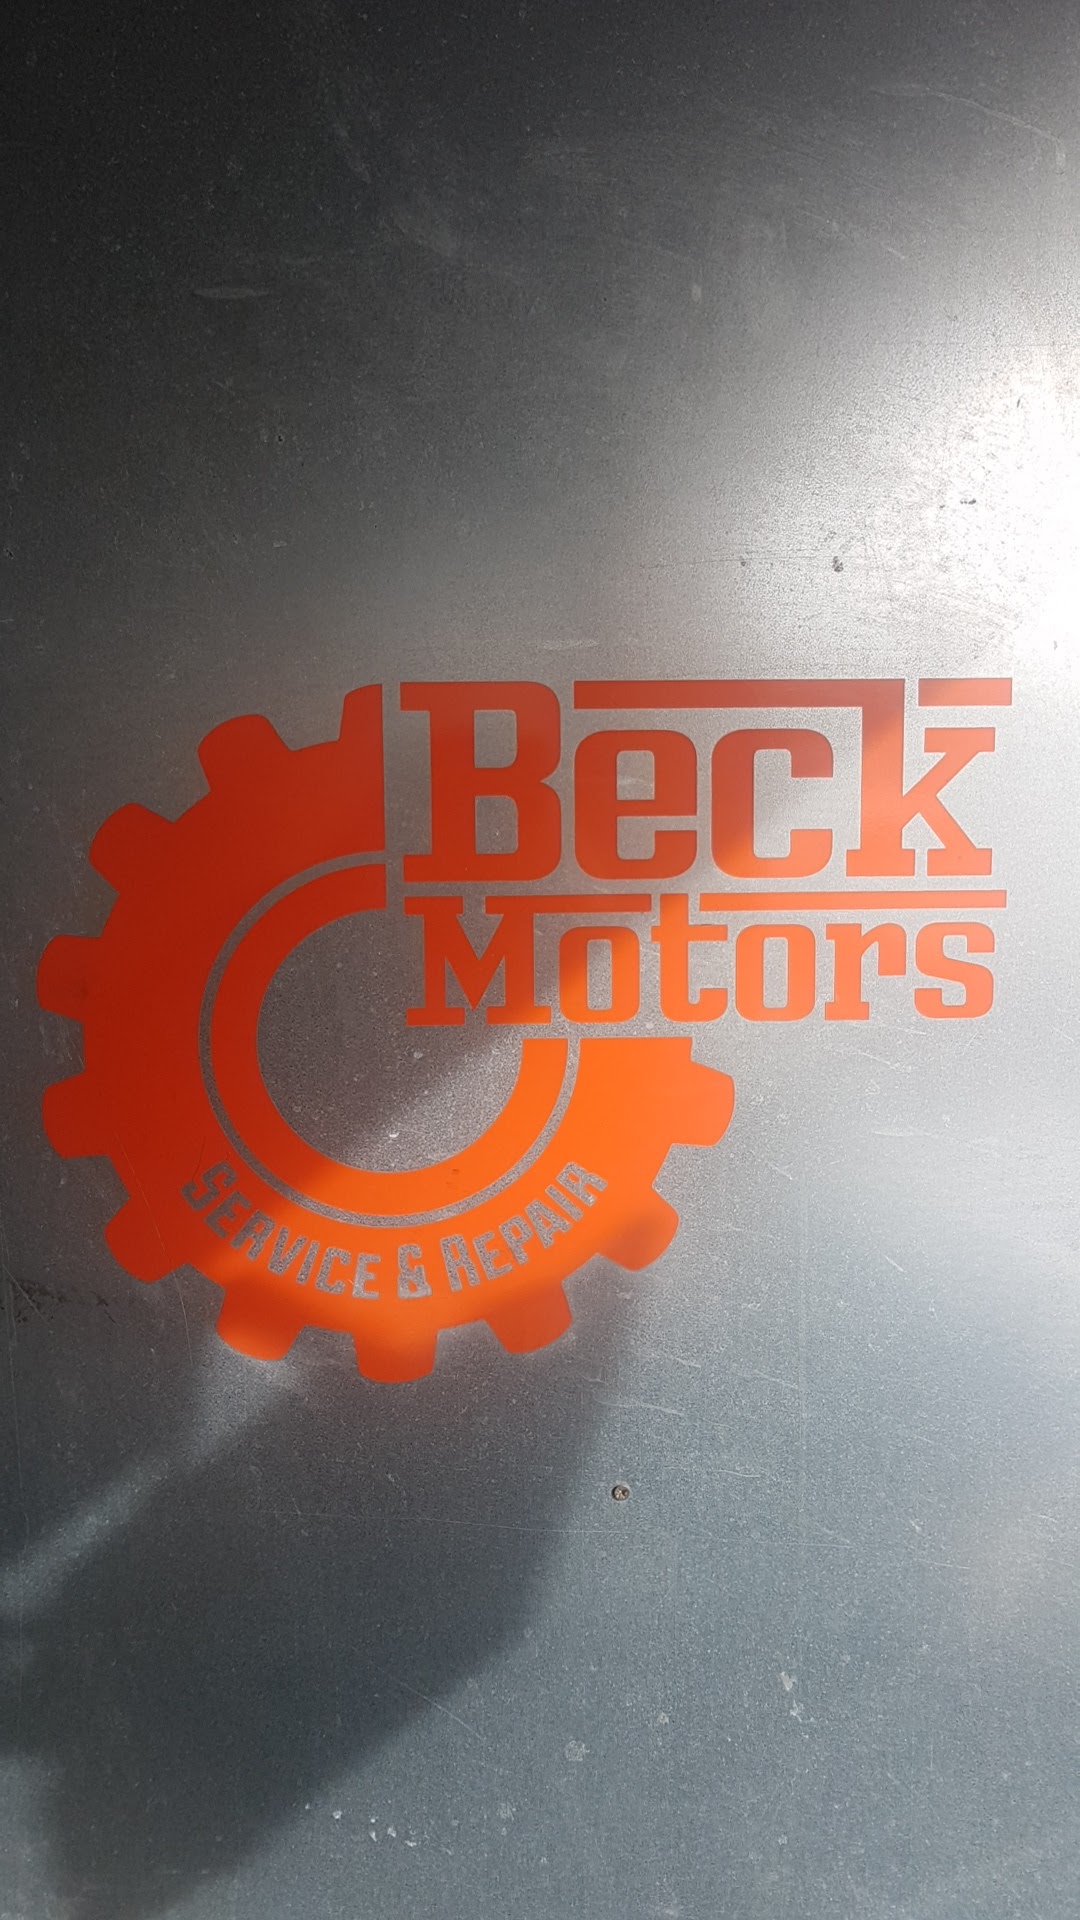 Beck Motors